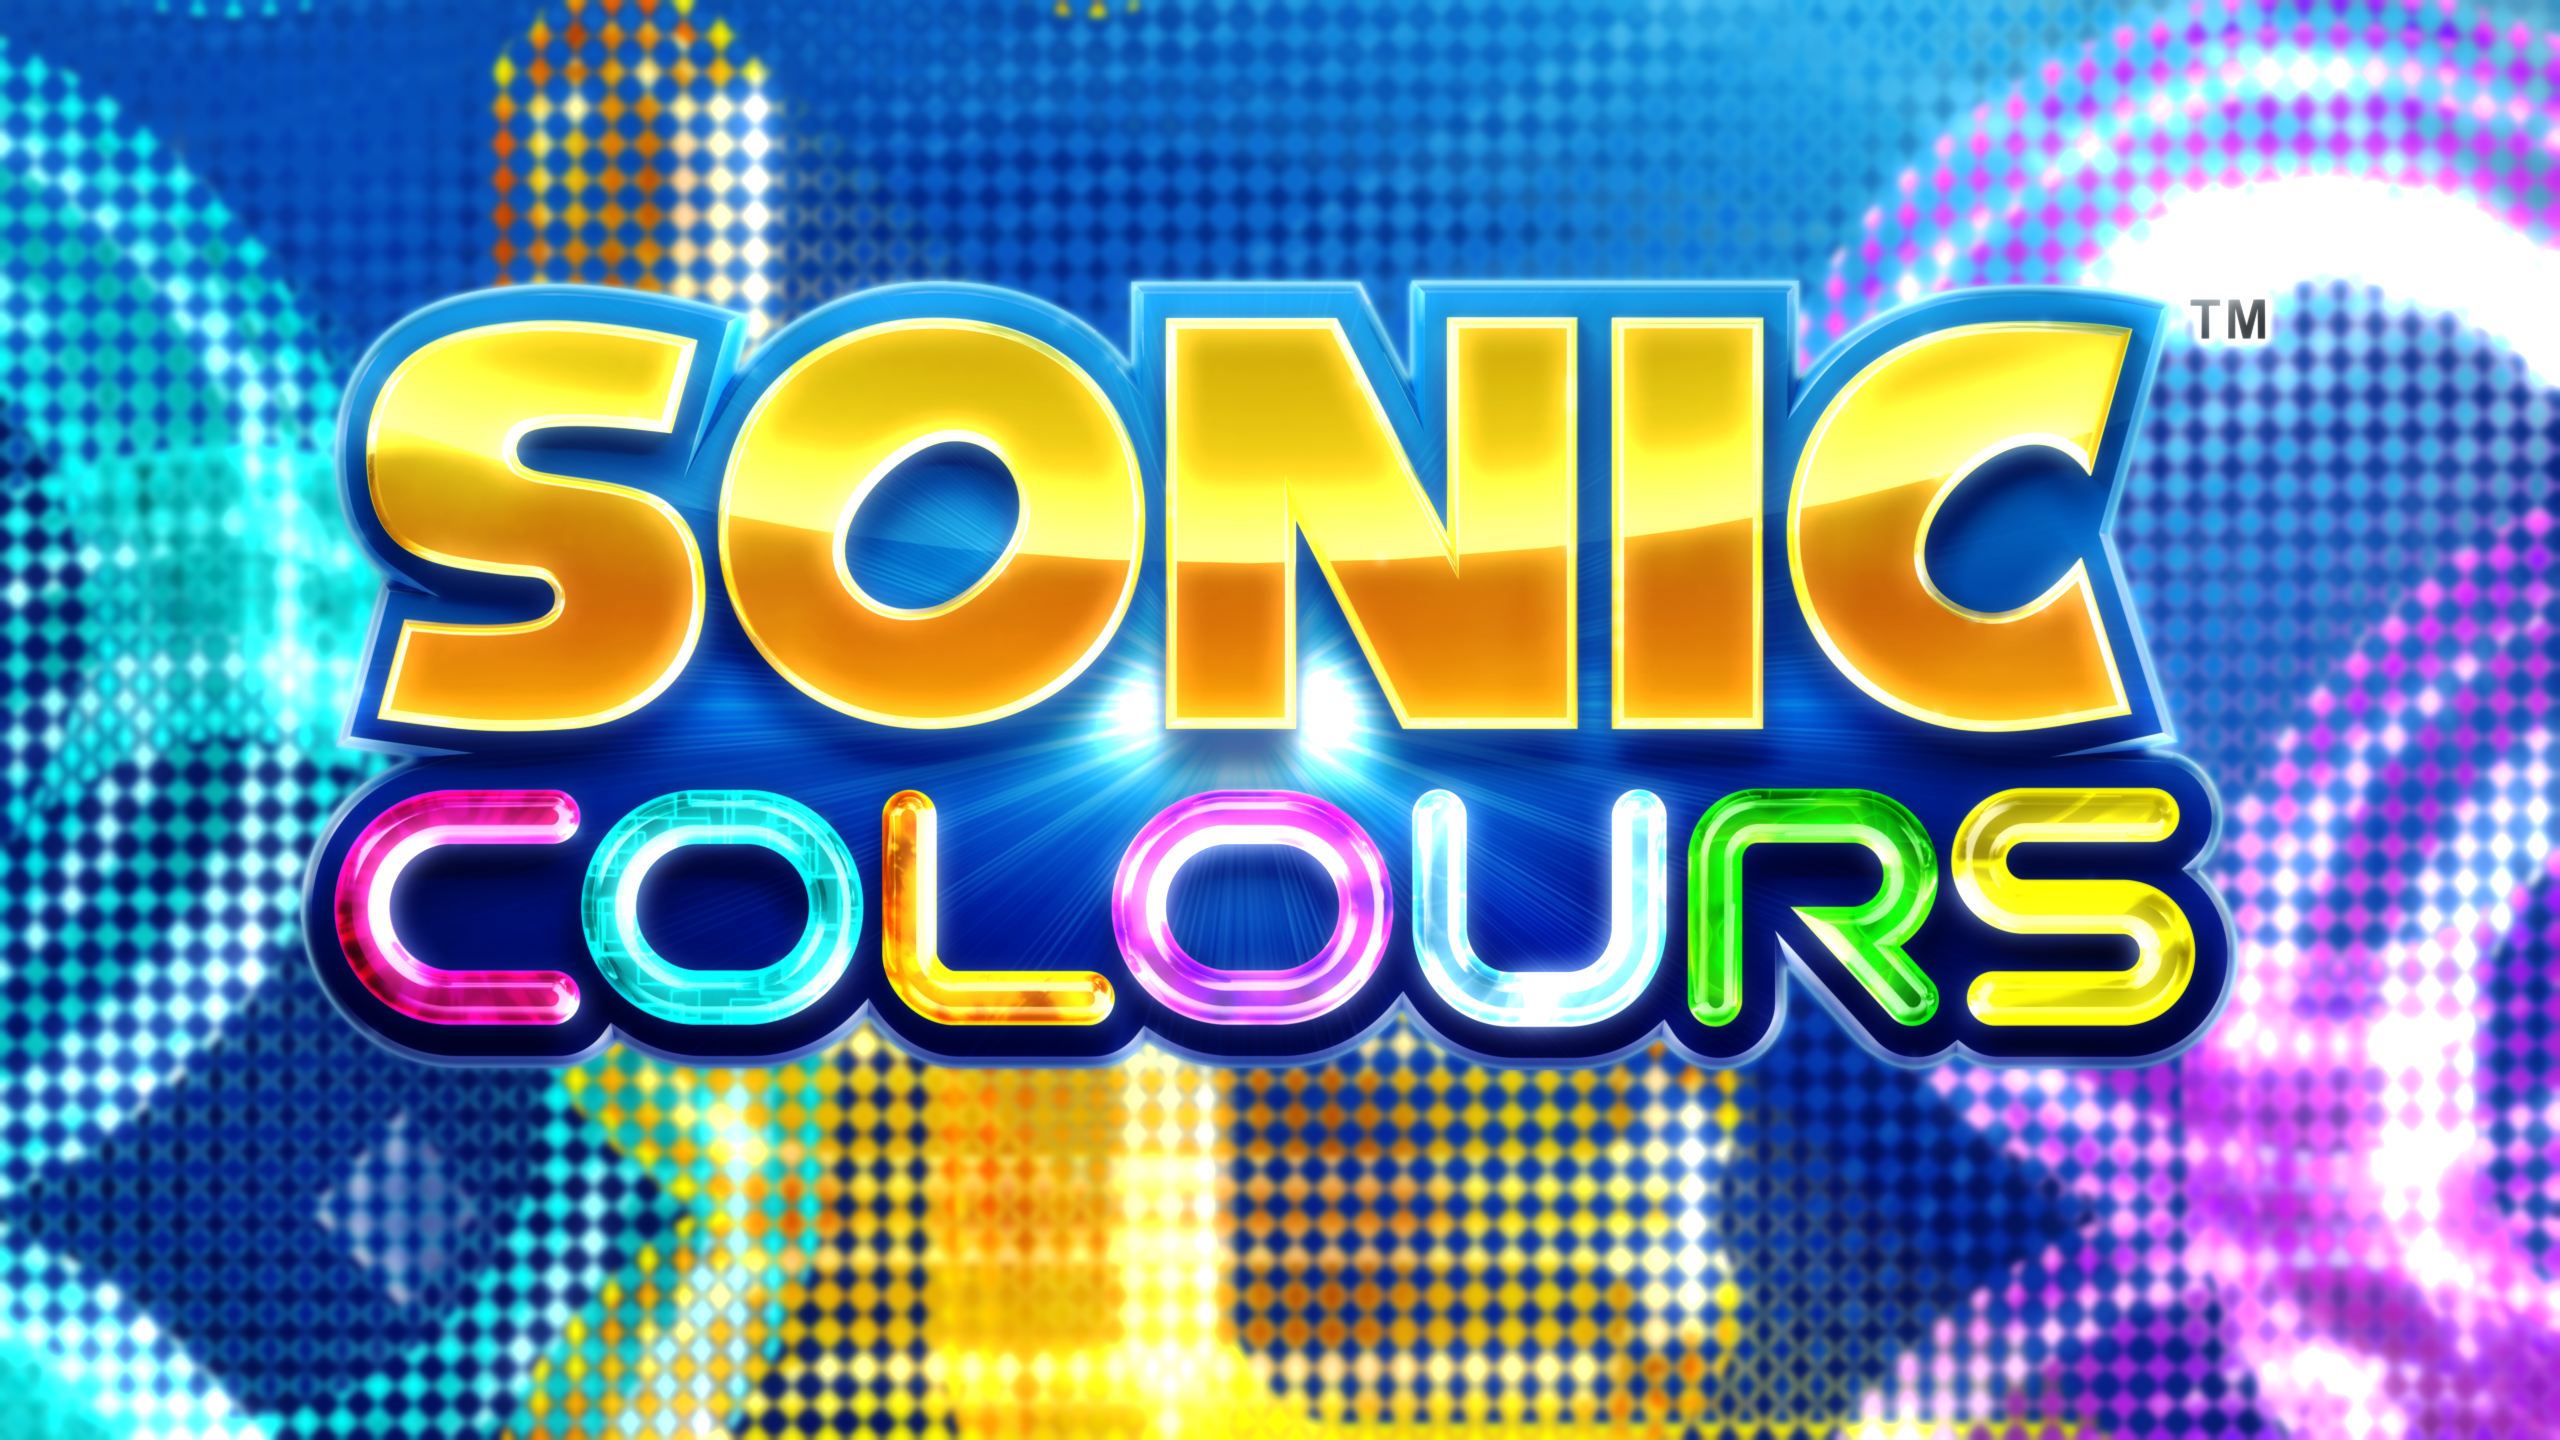 Sonic Colours\Colors [LG.1]